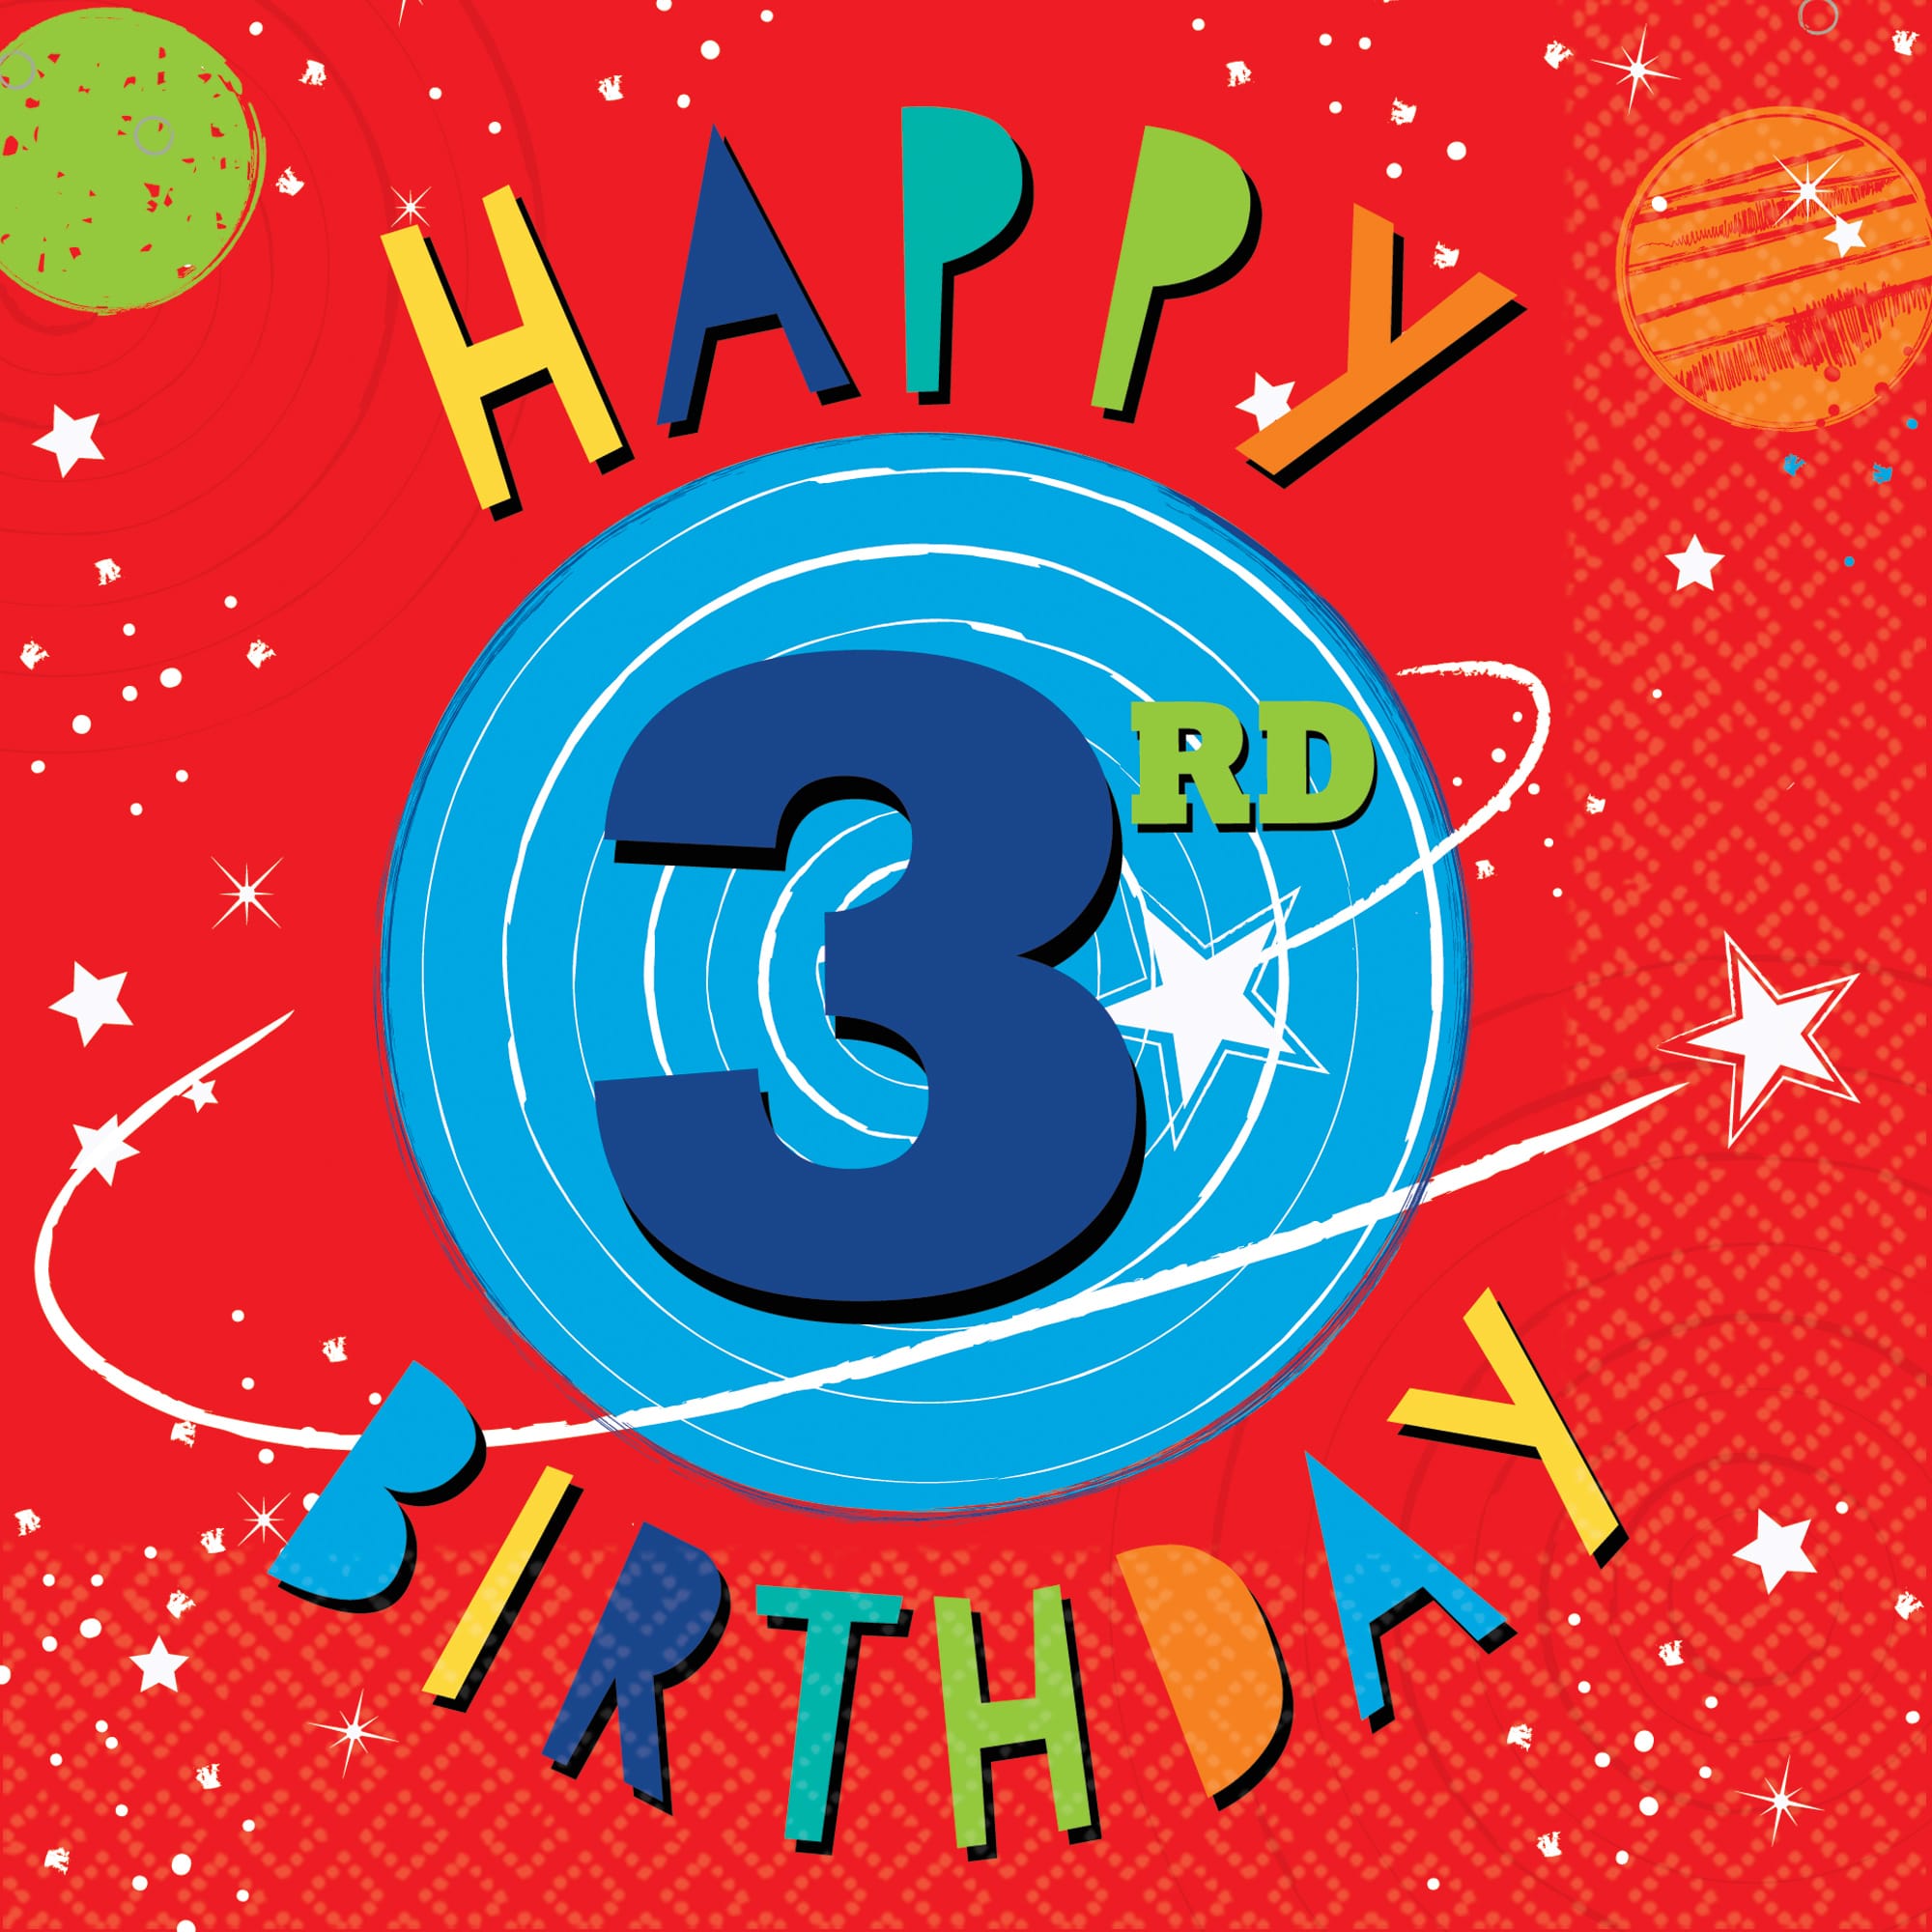 16-space-party-3rd-birthday-servietten-33cm-1